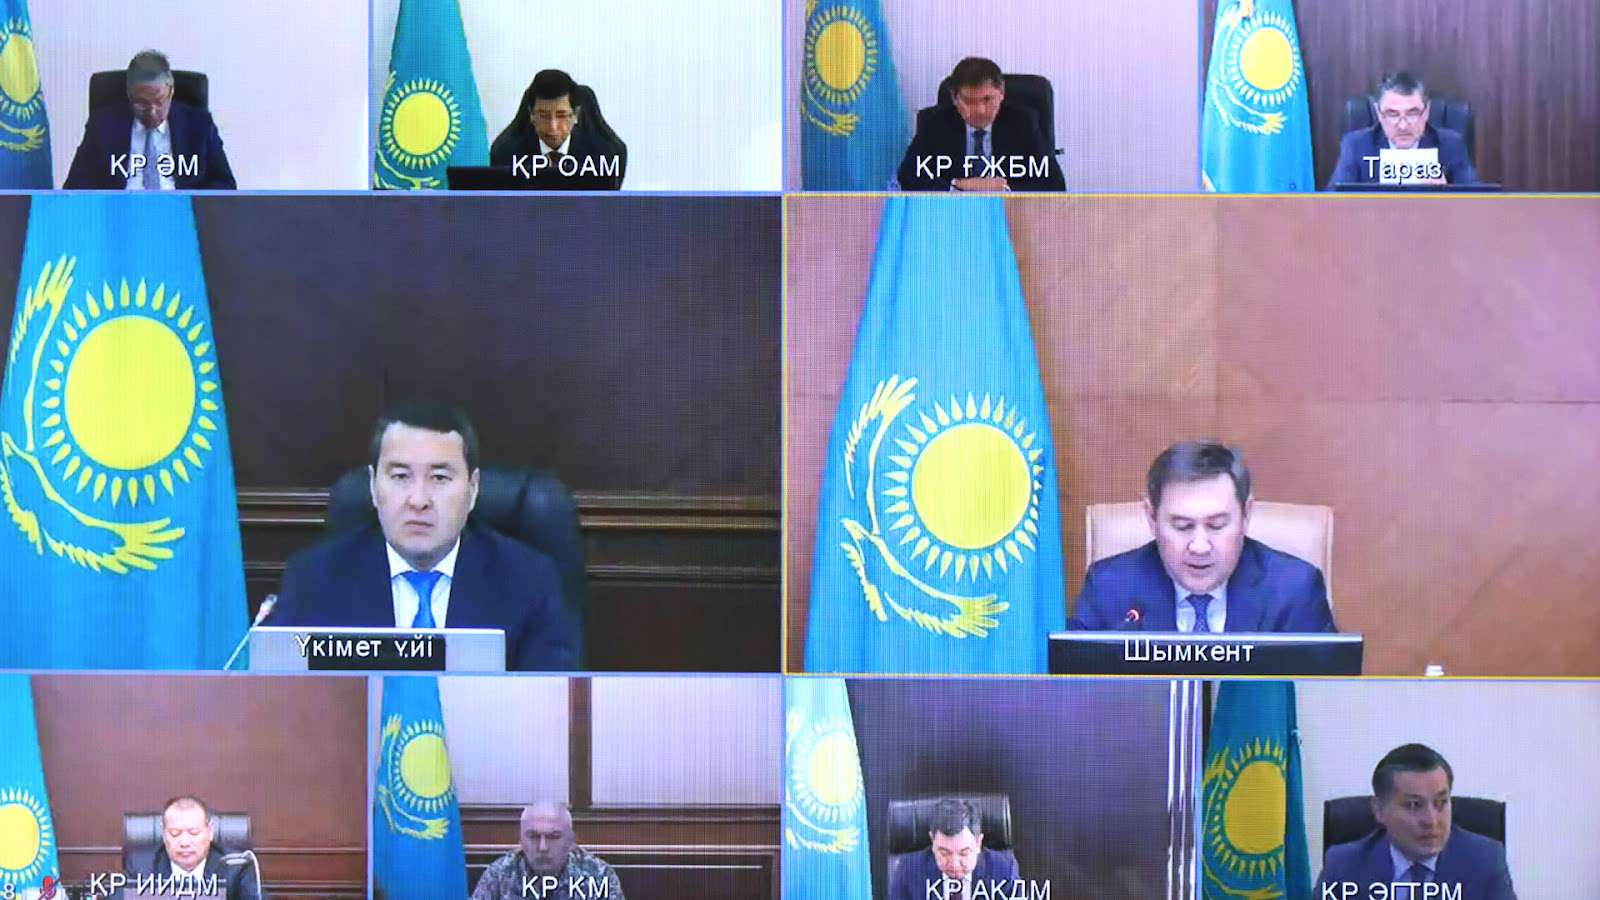 Кандидатами в президенты казахстана стали 7 человек. кто они?